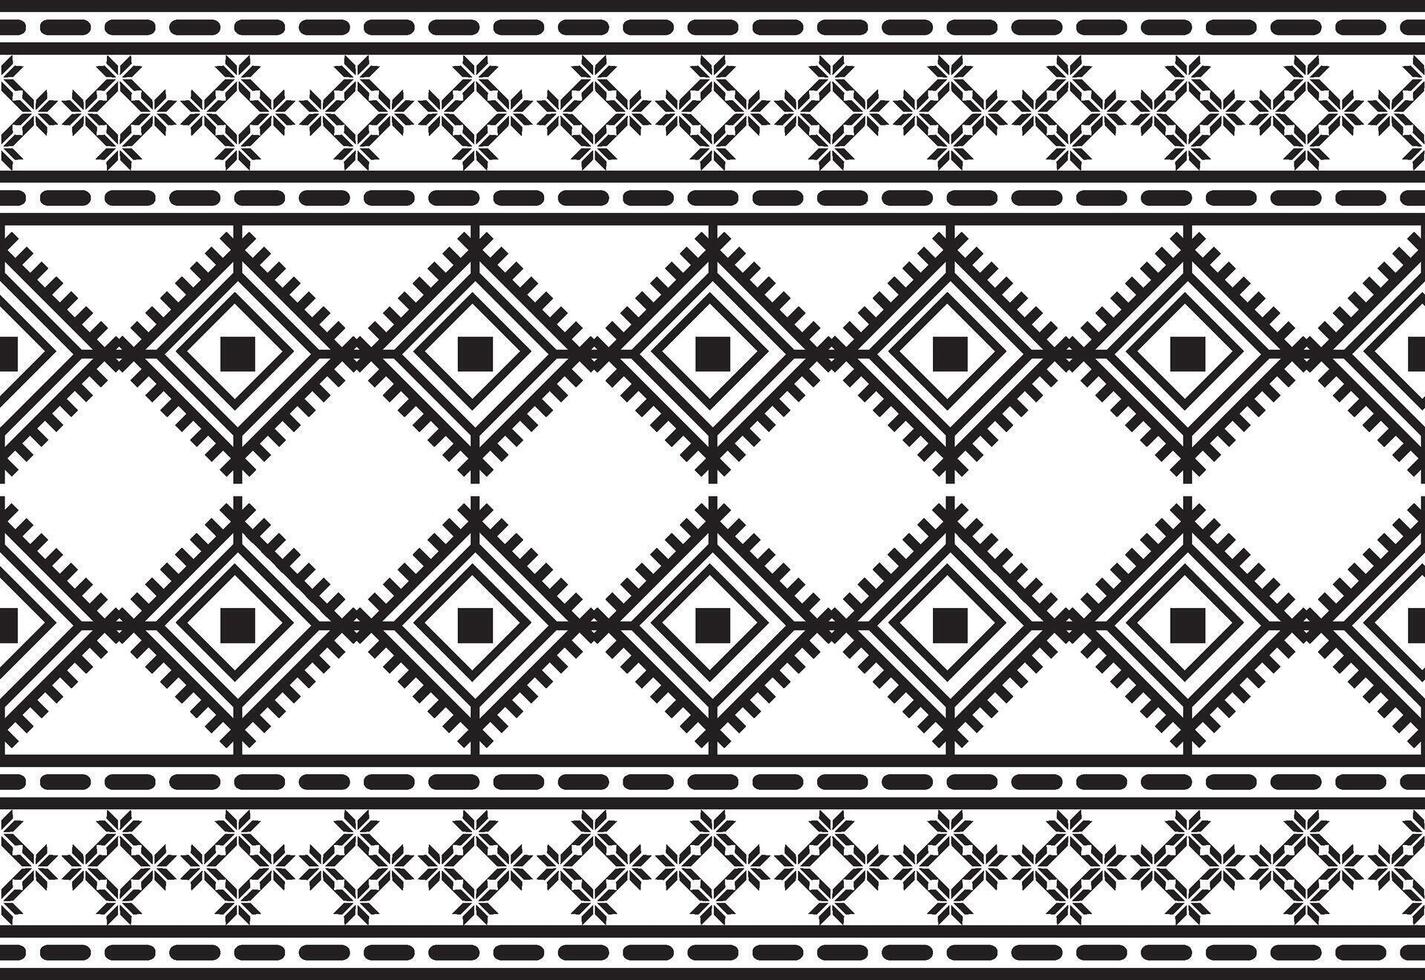 tribal tradicional tela batik étnico. ikat floral sin costura modelo hojas geométrico repitiendo diseño para fondo de pantalla, envase, moda, alfombra, ropa. negro y blanco vector